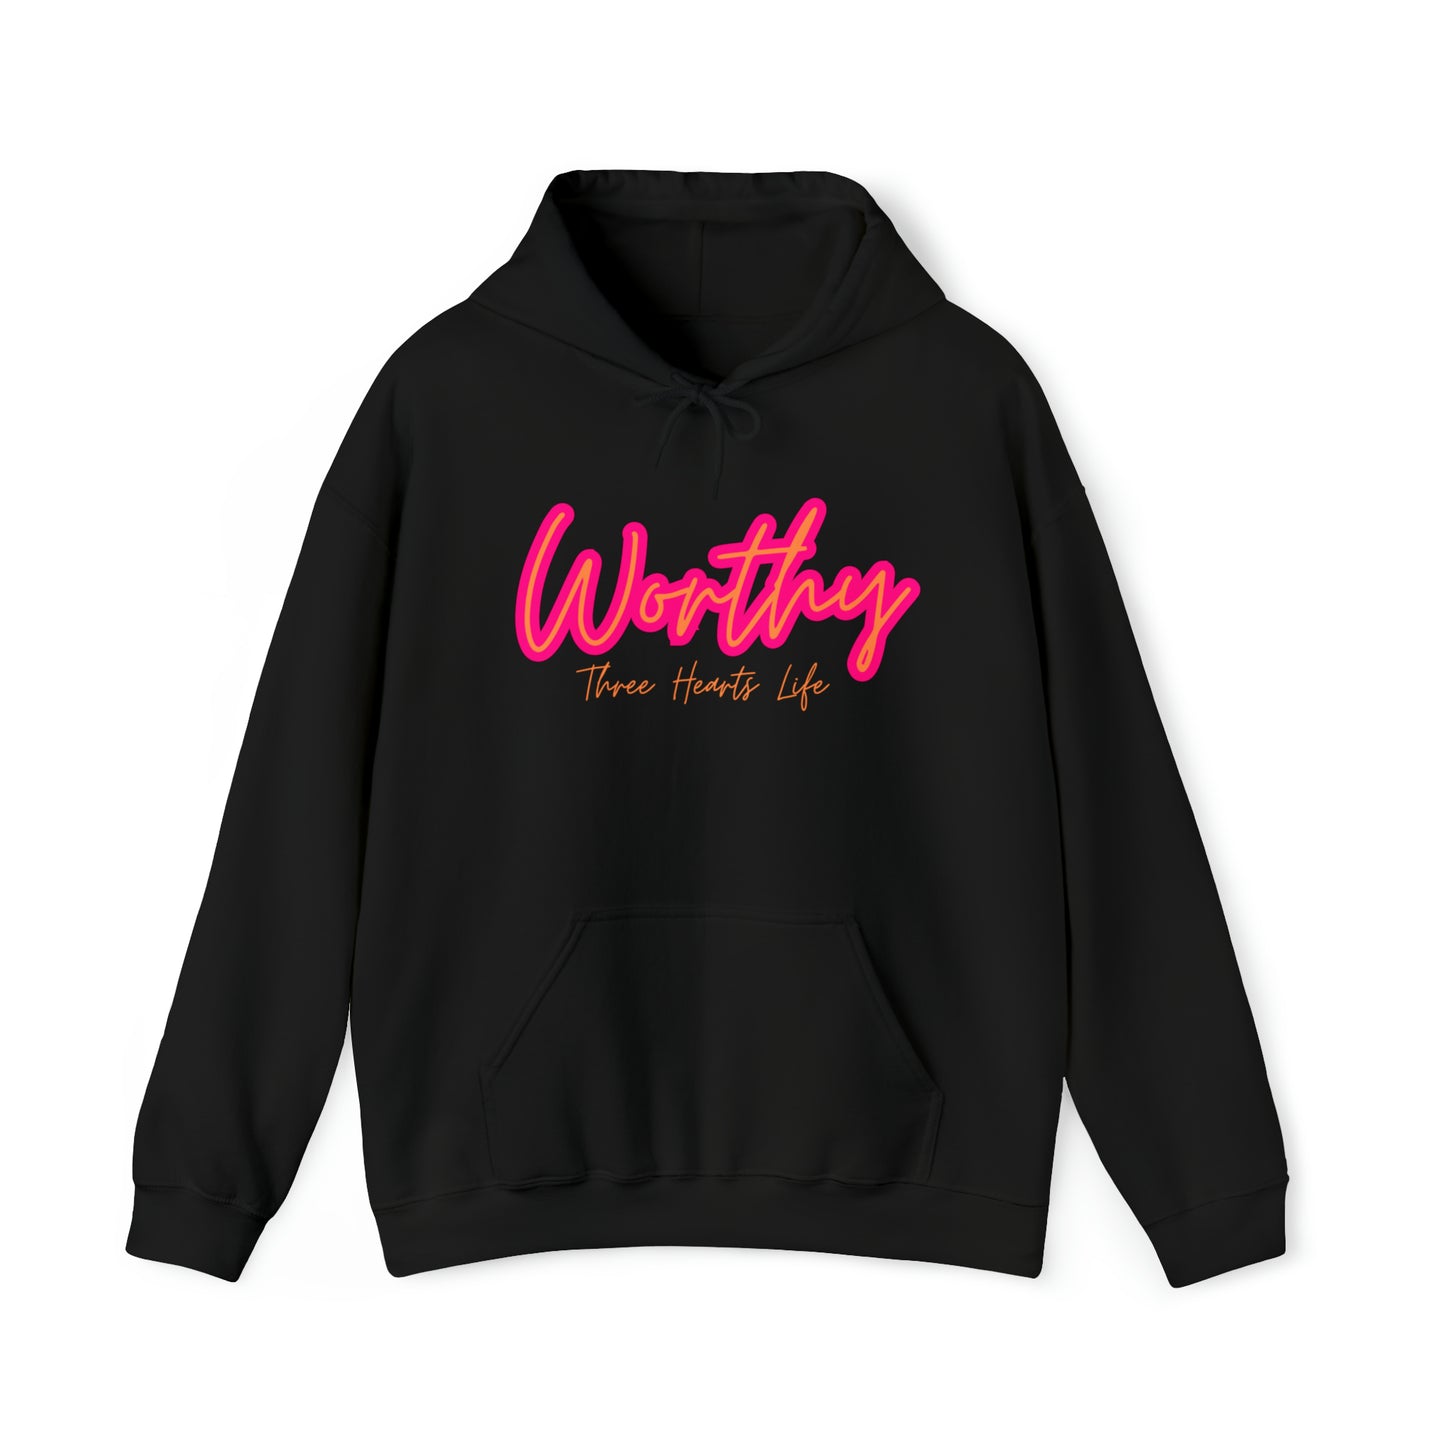 Worthy Unisex Hooded Sweatshirt